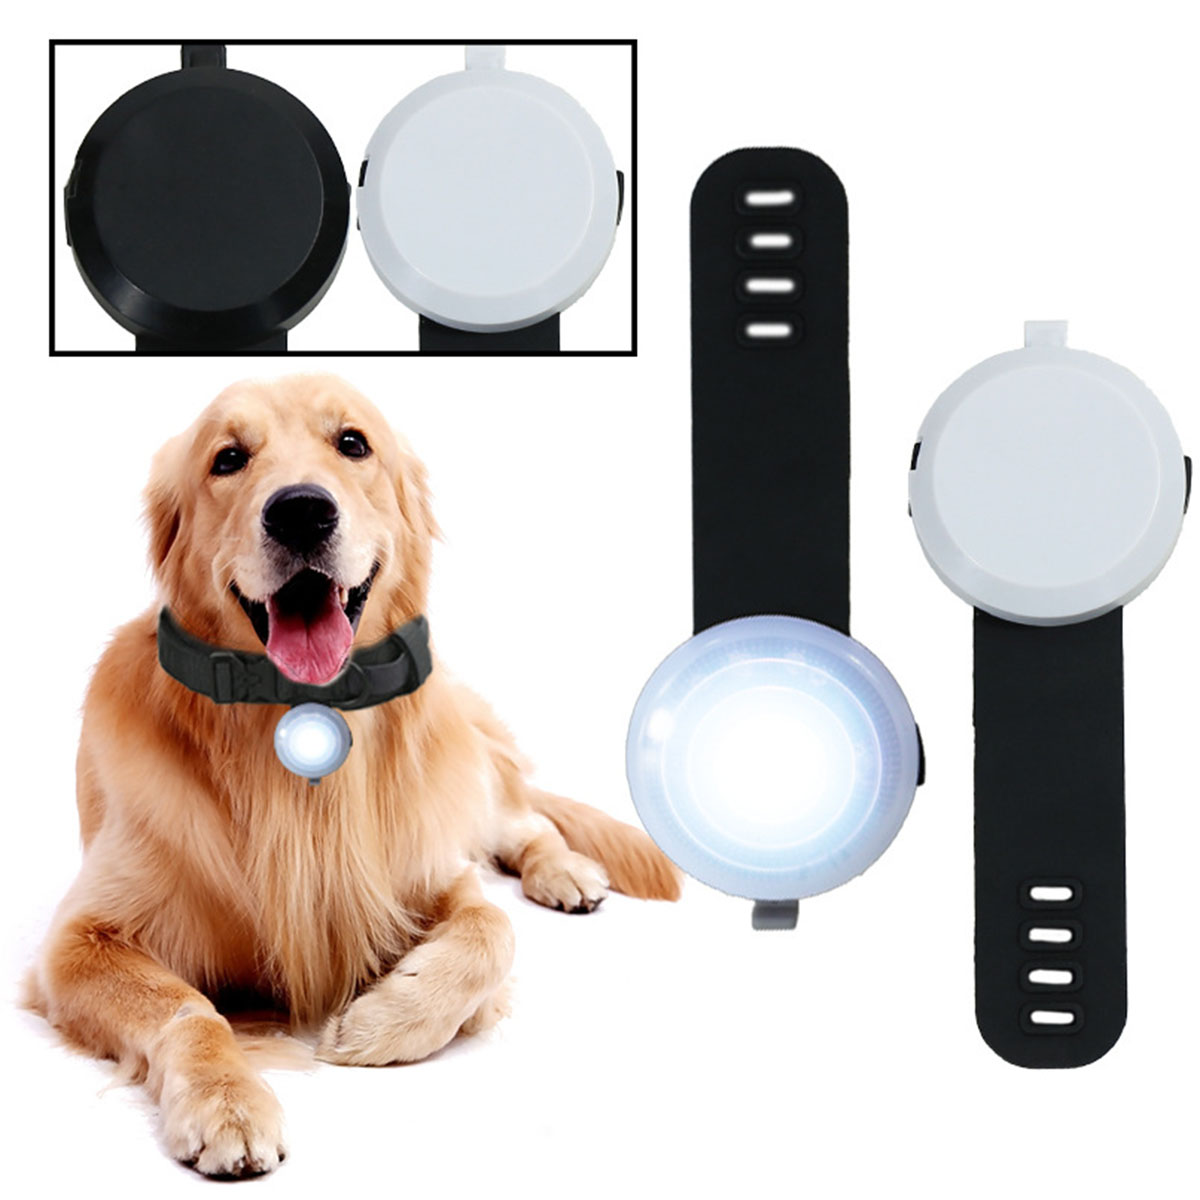 BRIGHTAKE Vielseitige LED Haustier-Anhänger - Maximale Dunkeln Hundeanhänger Sicherheit im